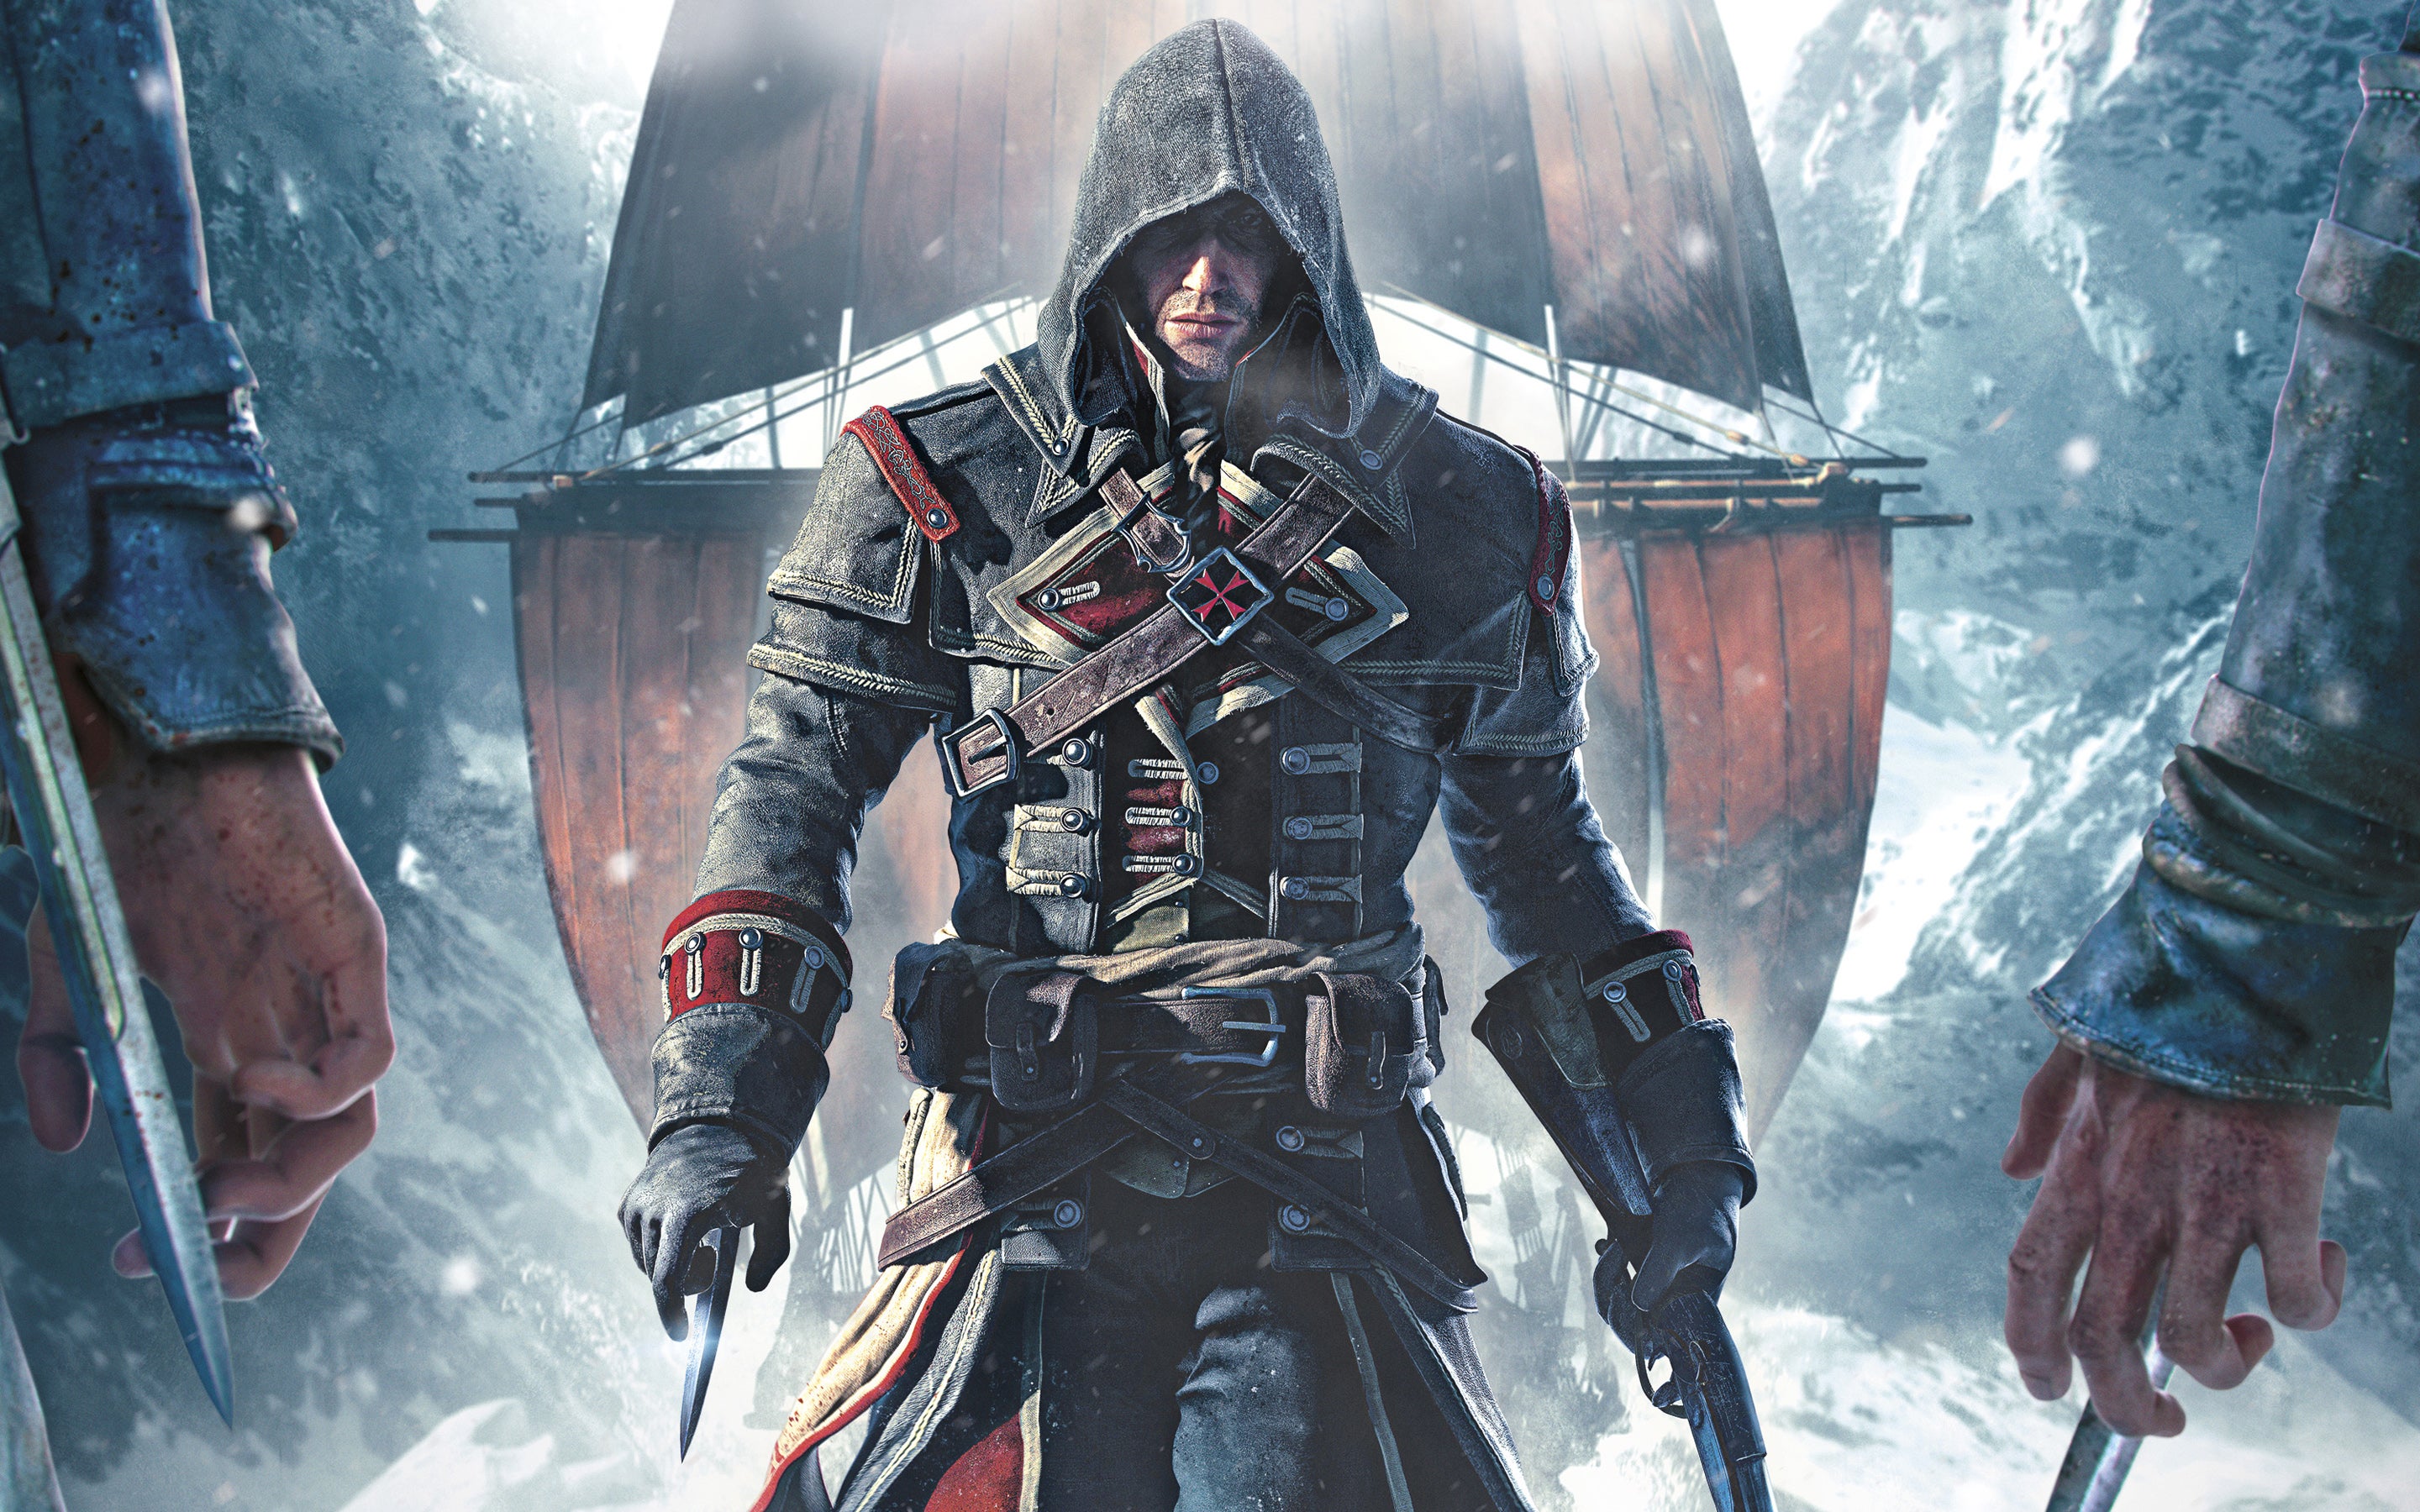 Imagem para Assassin's Creed Rogue: Vídeo compara versões PC e consola